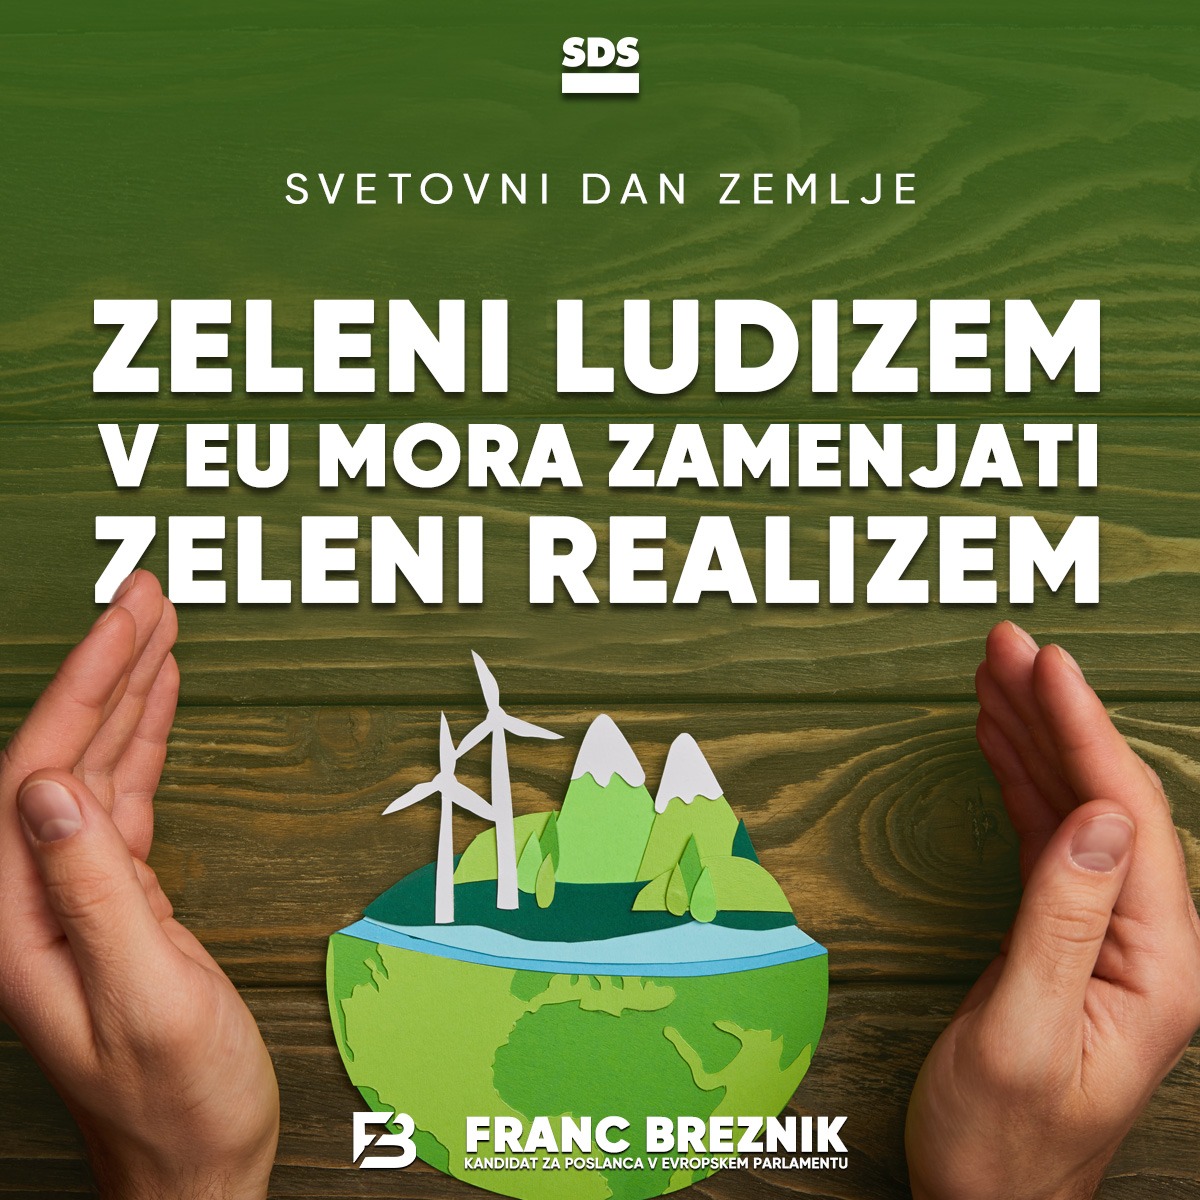 Danes je svetovni dan Zemlje. S planetom moramo ravnati skrbno- z ravnanji pa ne pozabiti na kmete in gospodarski razvoj. Slovenija ustvari 0,5 % vseh emisij v Eu. Ogljična intenzivnost 🇸🇮 se je med letoma 2005 in 2019 zmanjšala za 36 %, kar je več od povprečja EU. @strankaSDS